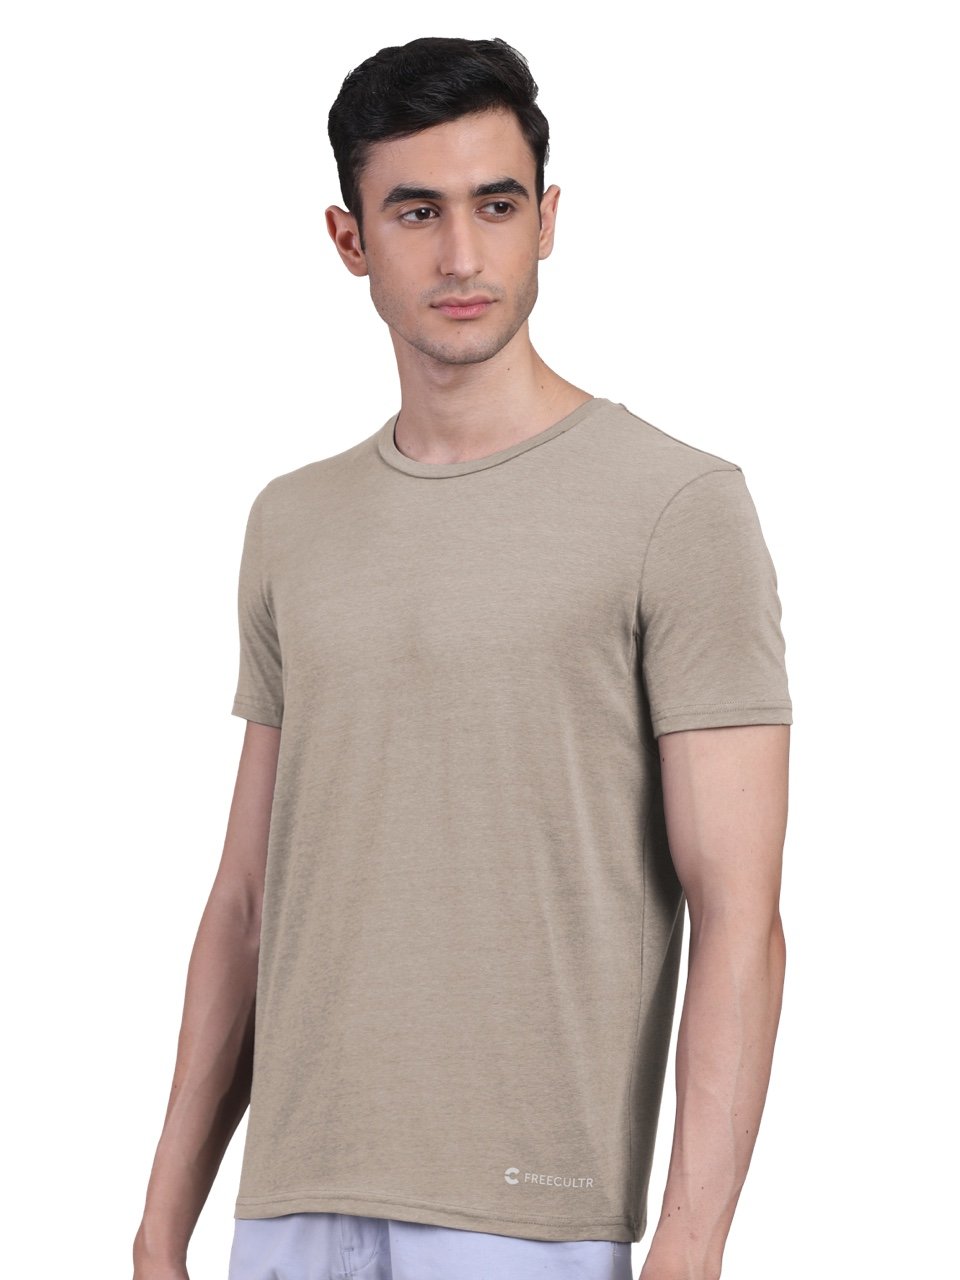 Men's Half Sleeves Bamboo Undershirts (Loungewear & Sleepwear) - Pack of 2